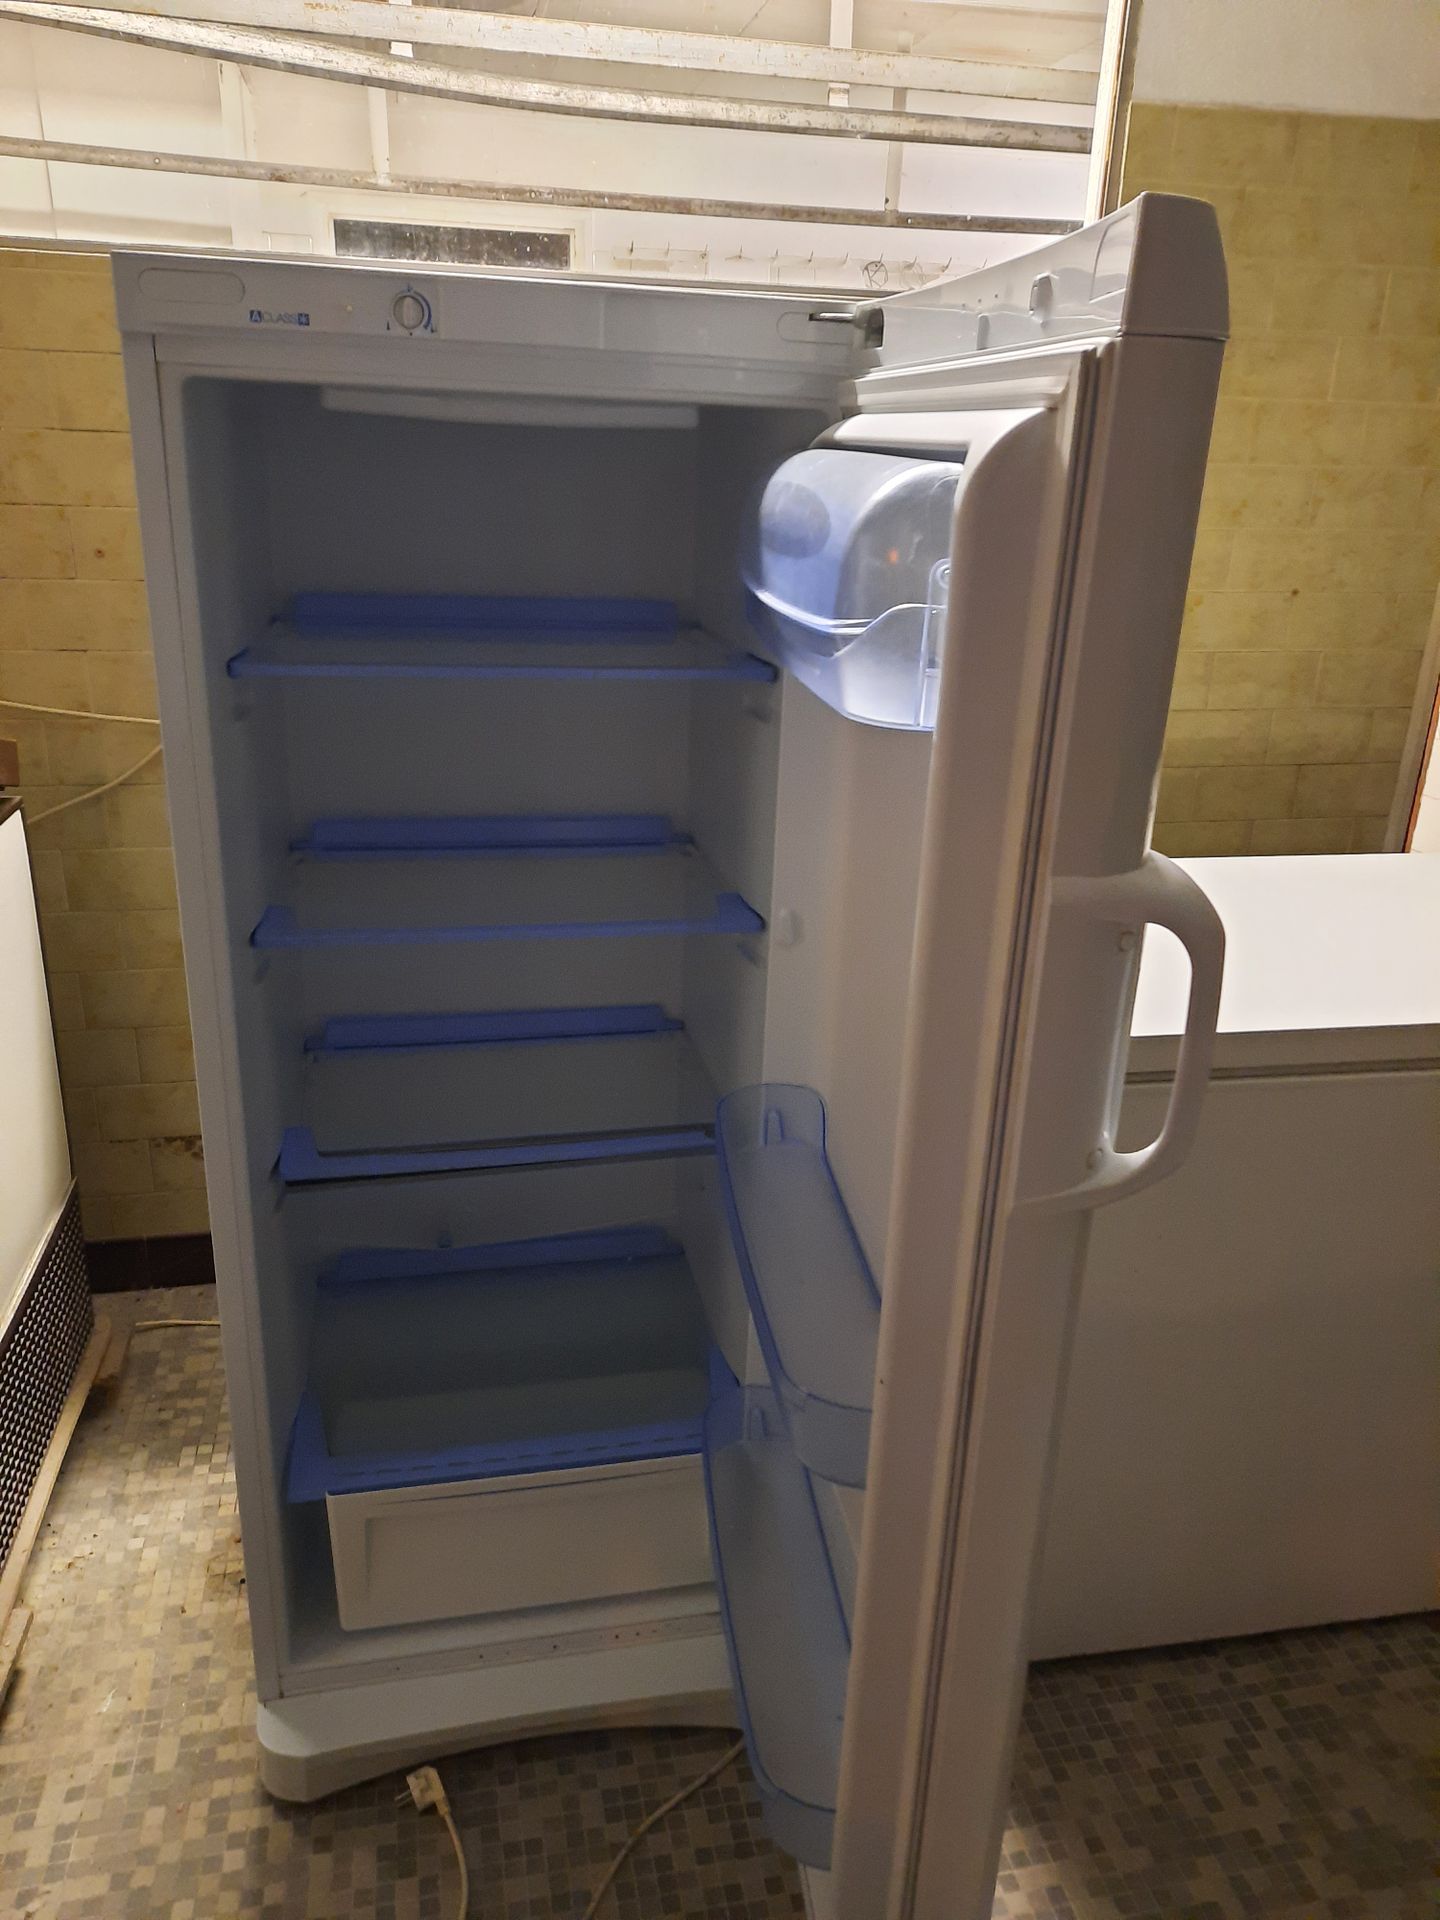 Null 1 réfrigérateur de marque INDESIT sans plaque d'identification apparente